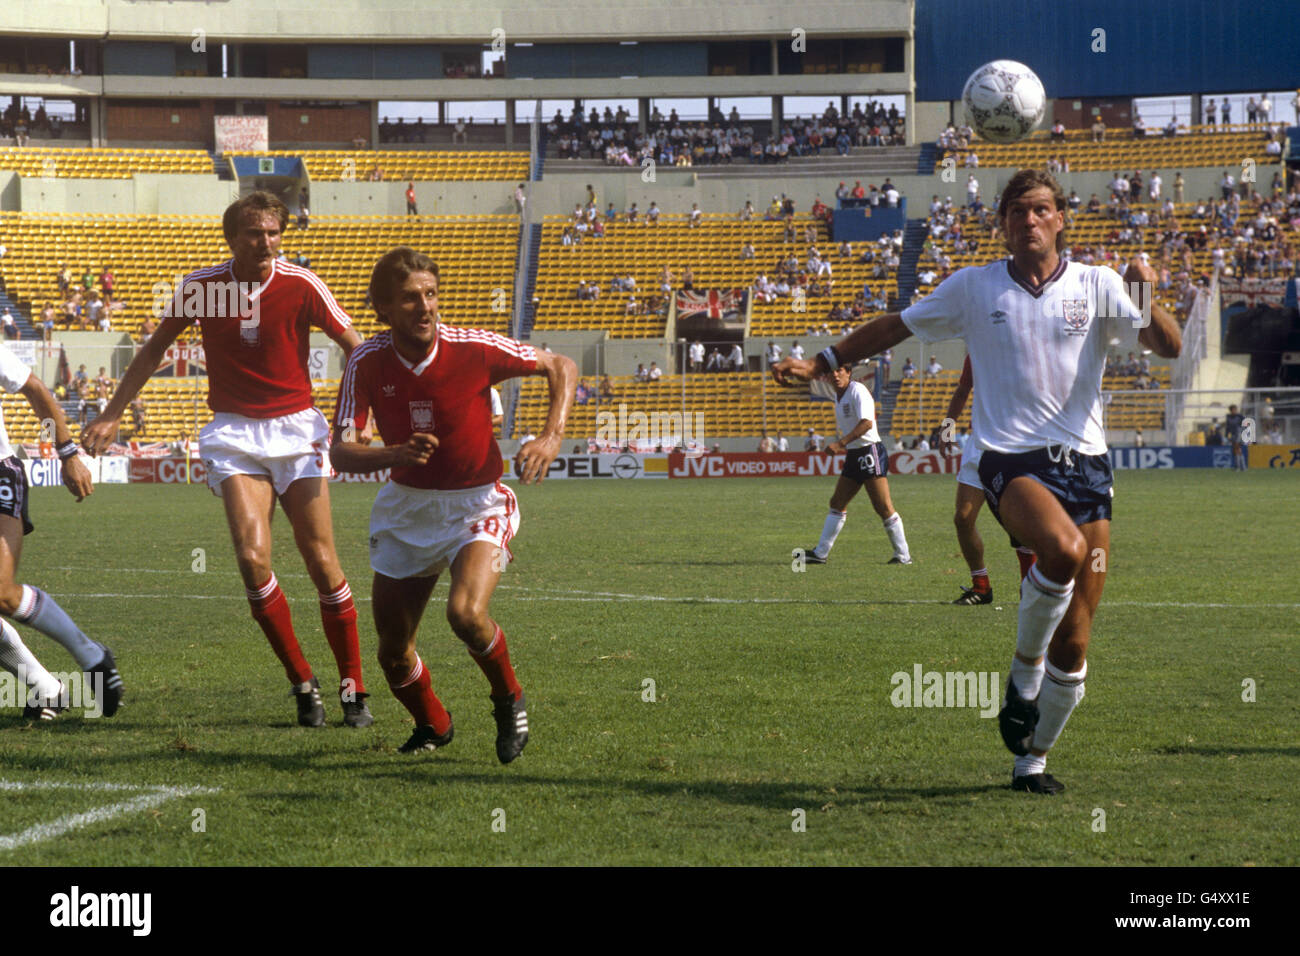 Calcio - Coppa del mondo FIFA Messico 1986 - Gruppo F - Inghilterra / Polonia - Universitario Stadium. Glenn Hoddle in azione in Inghilterra (r) guardato dal romano polacco Wojcicki (l) Stefan Majewski (c). Foto Stock